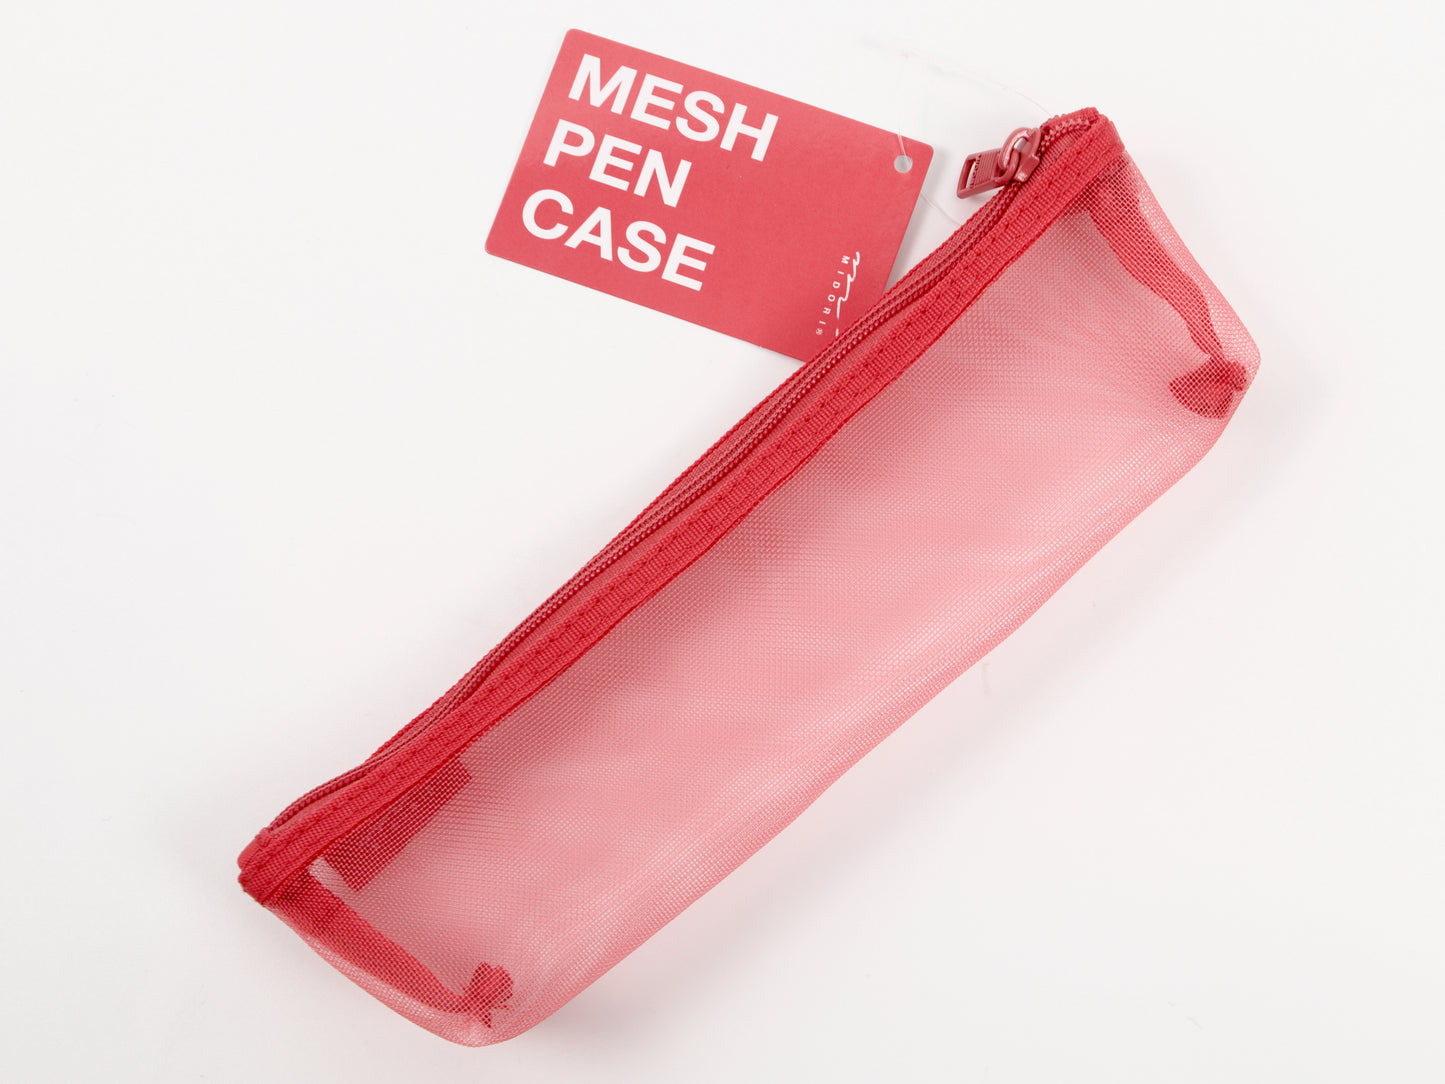 Midori Mesh Pen Case